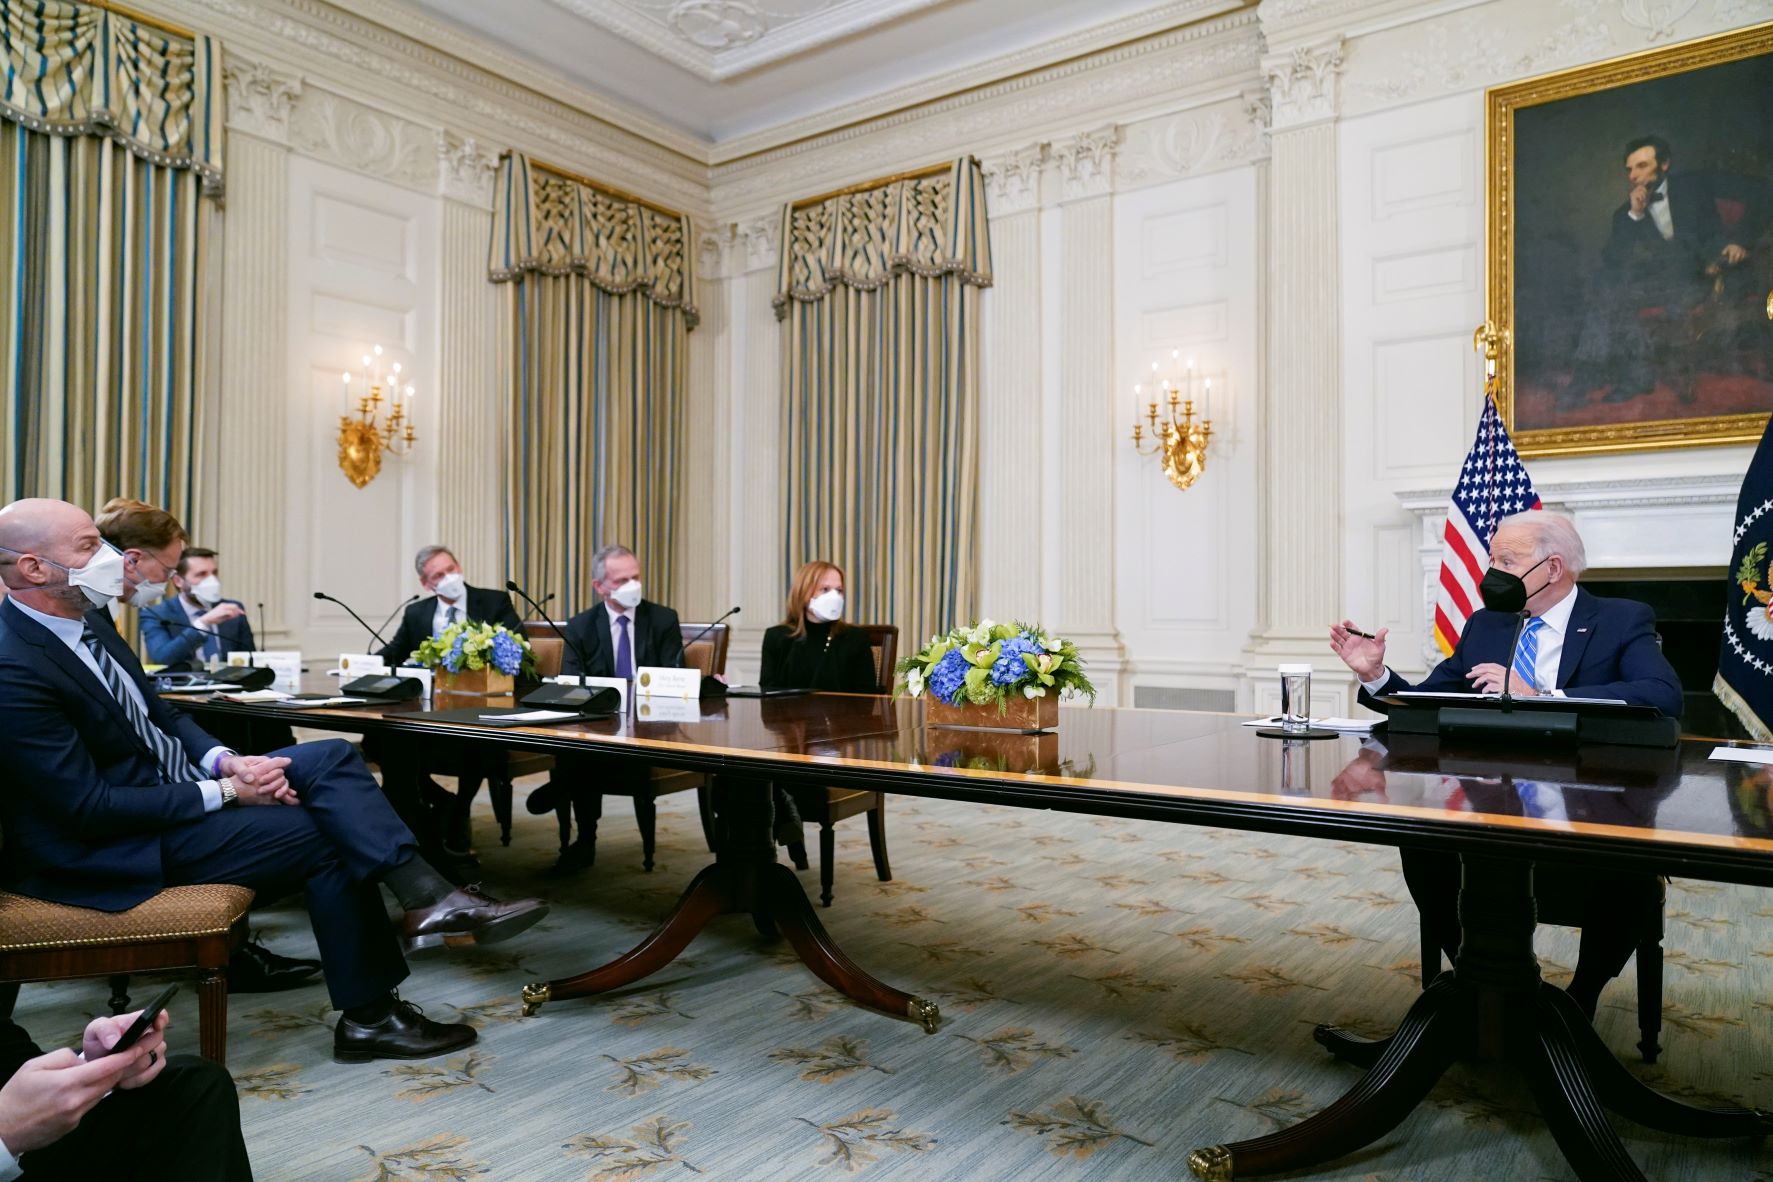 الرئيس جو بايدن أثناء لقاء في غرفة غذاء الدولة، مع مديرين تنفيذيين من القطاع الخاص لنقاش خطته عن "إعادة البناء بشكل أفضل" 